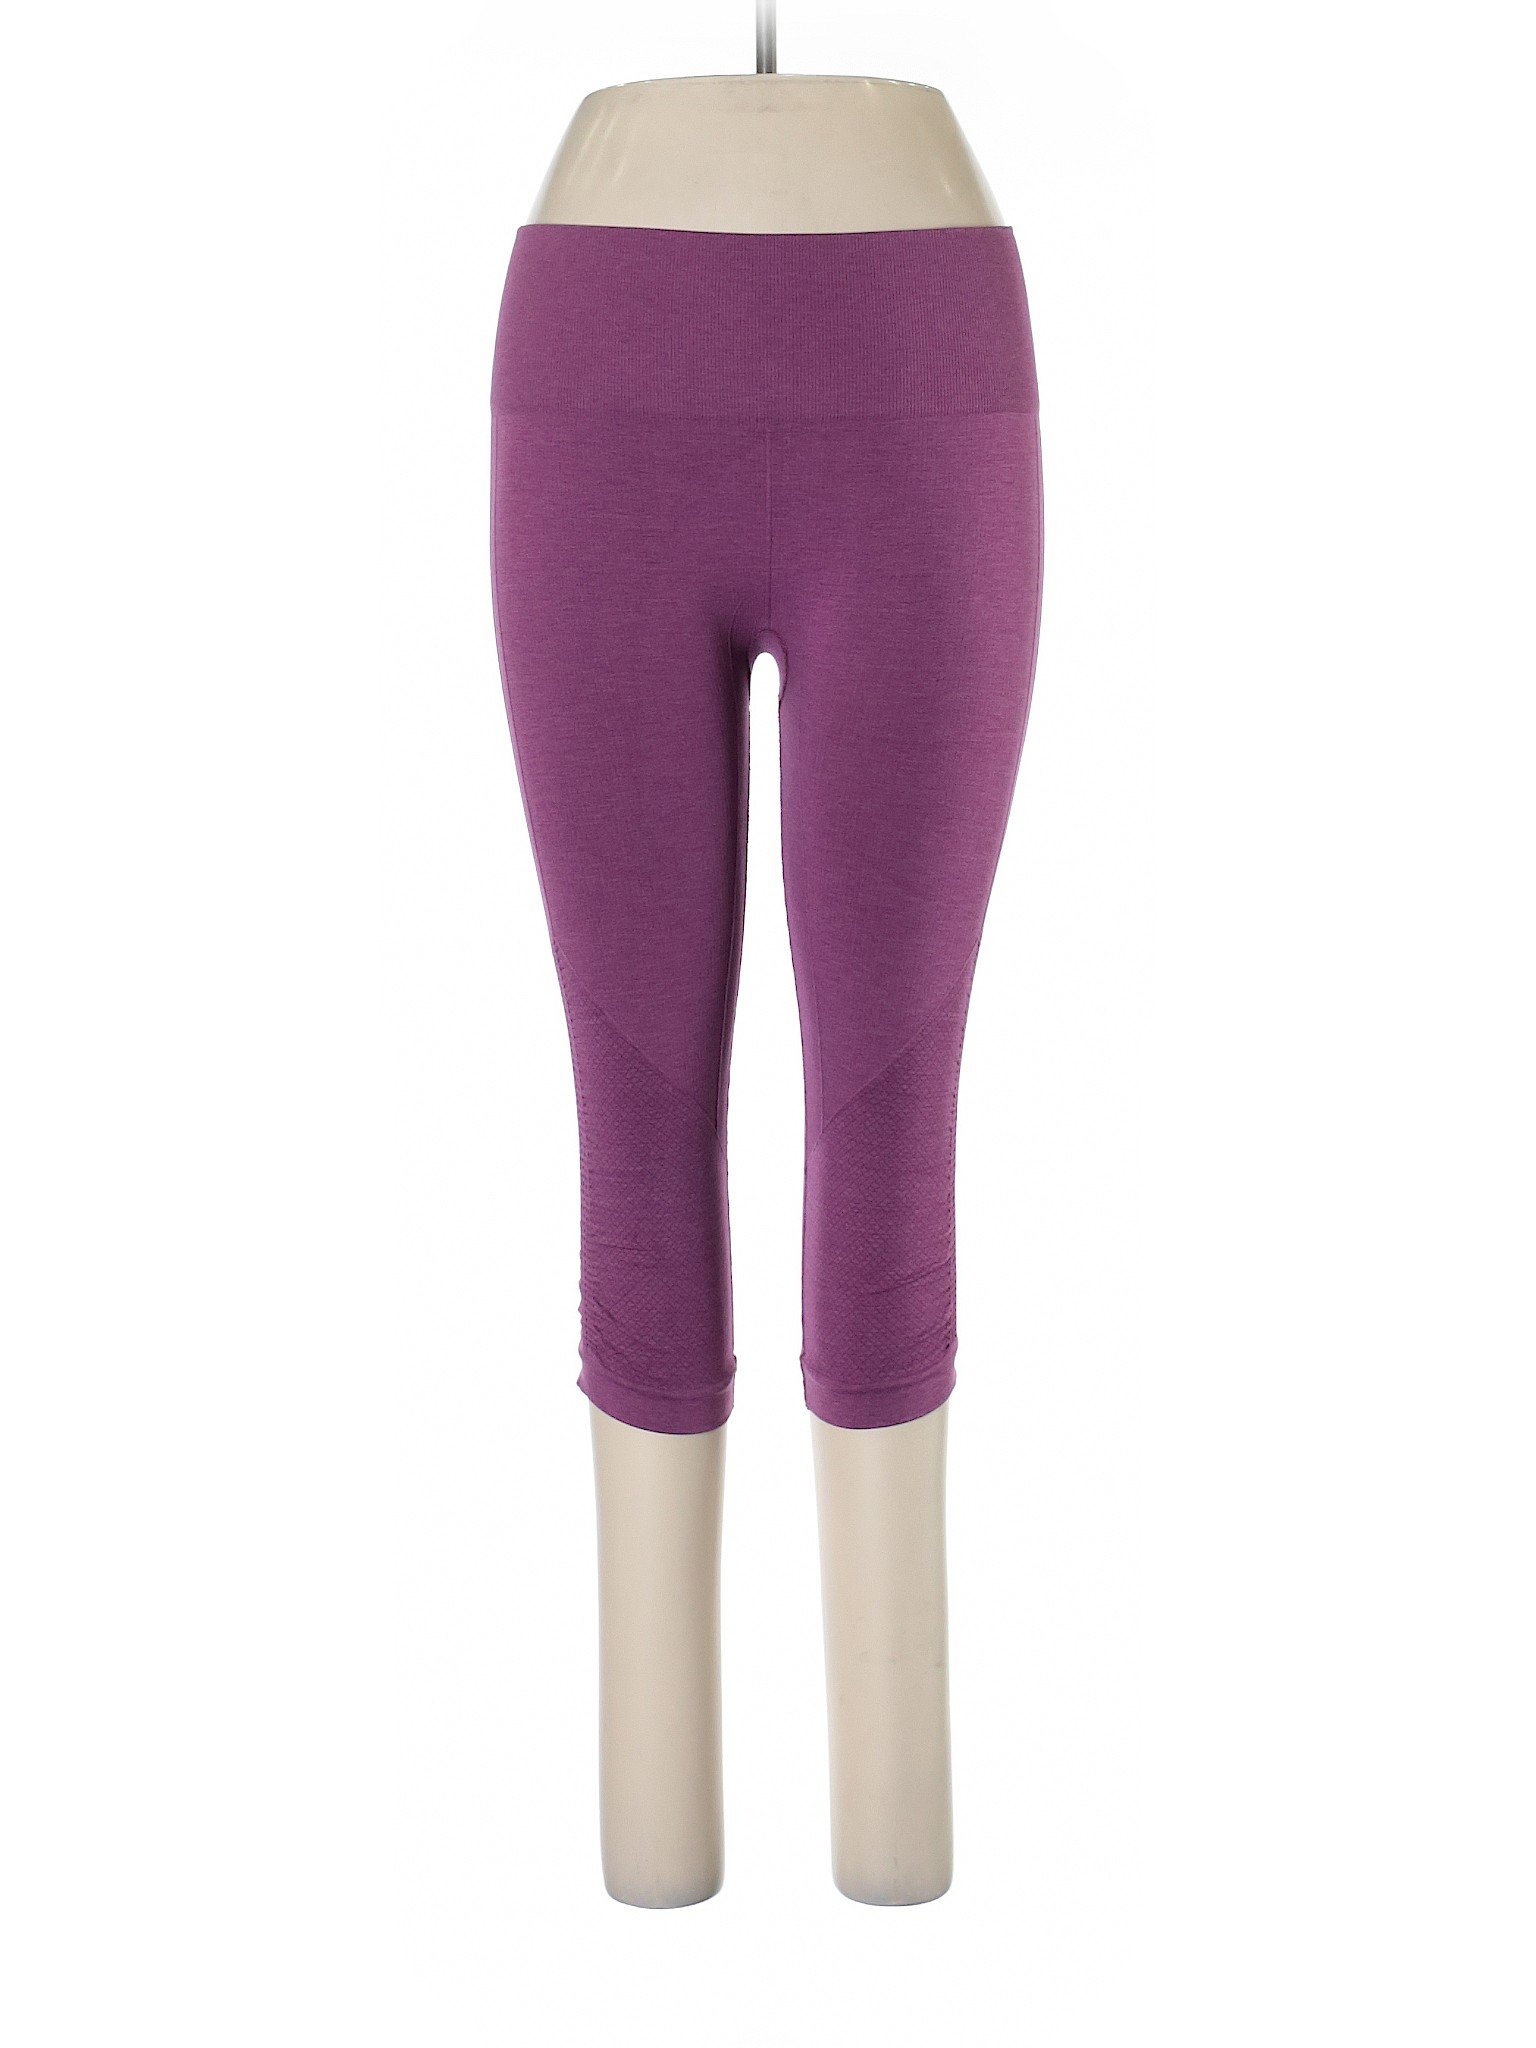 Lululemon leggings 4 full length skinny CELL POCKET purple striped Ruched  ANKLE